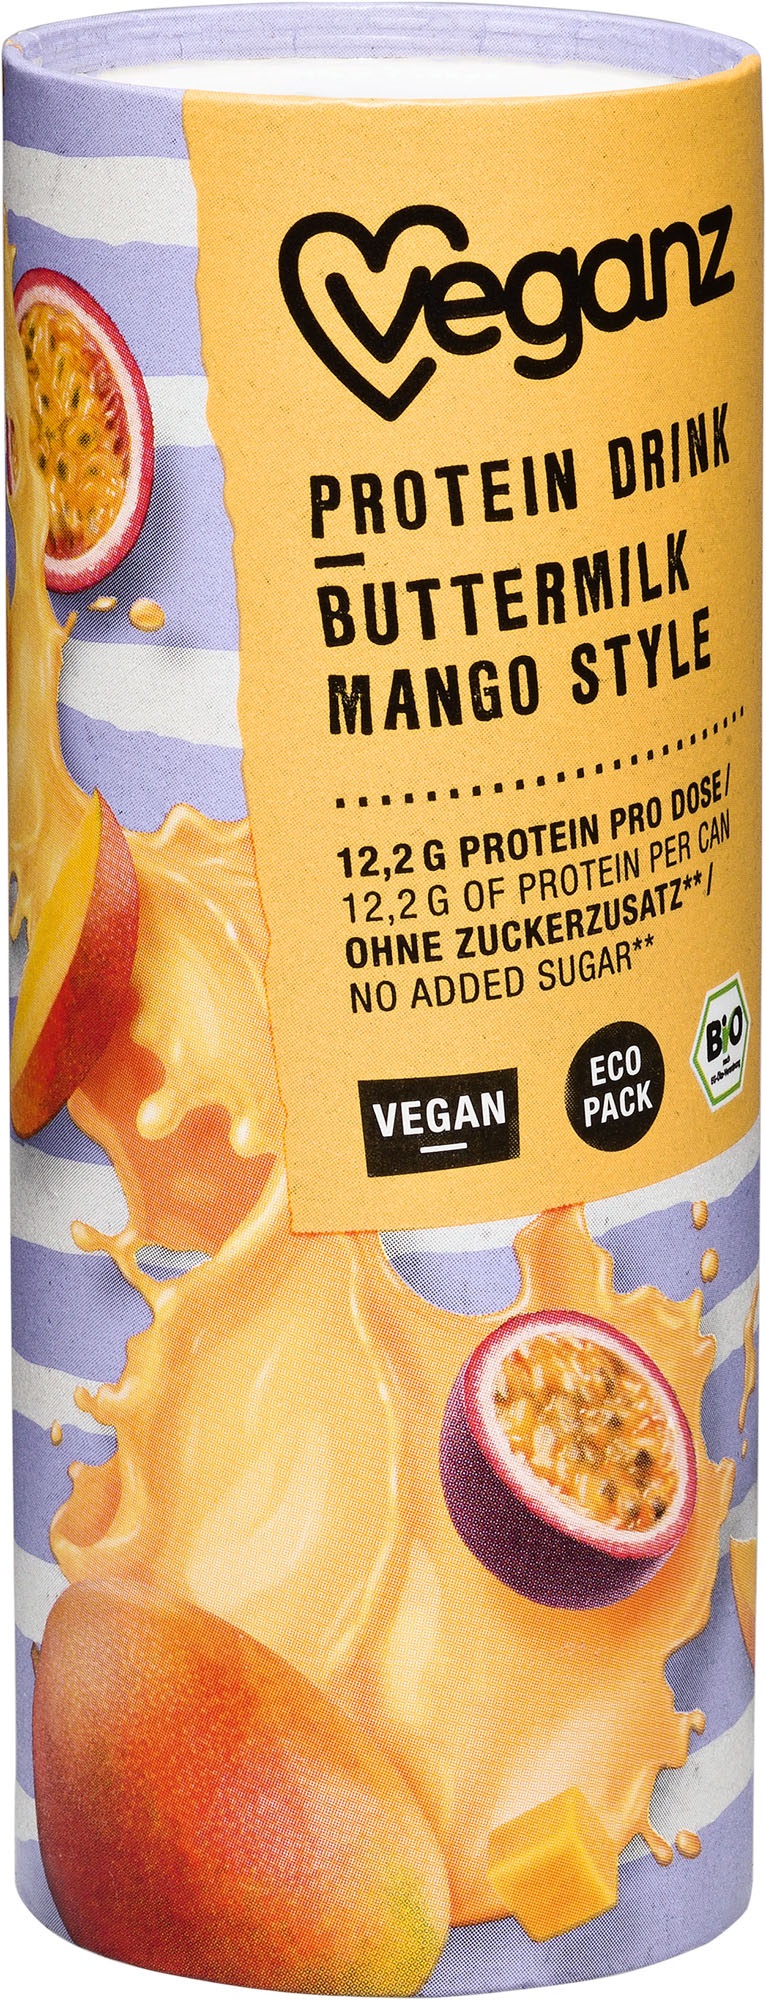 Veganz Bio Protein Drink Buttermilk Mango (3 Stück)  - 235ml